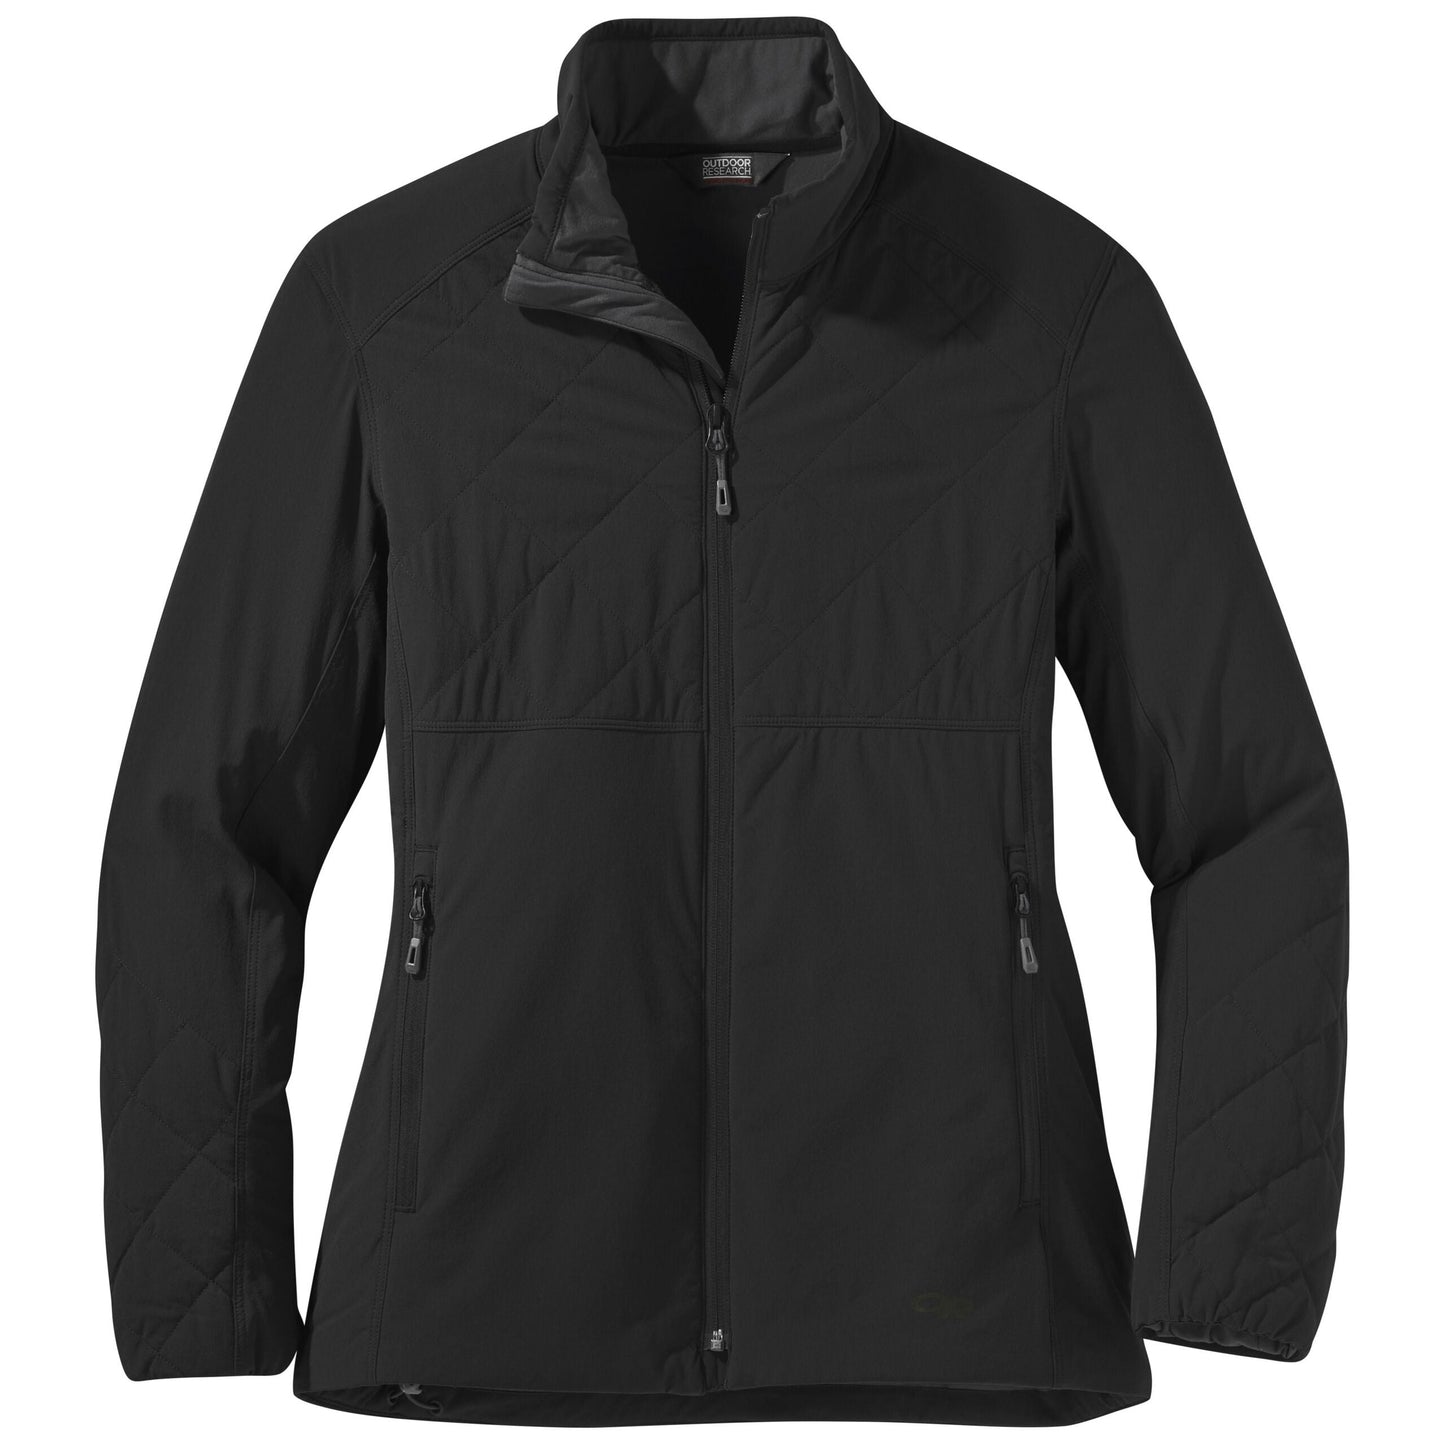 Outdoor Research - Women's Winter Ferrosi Jacket